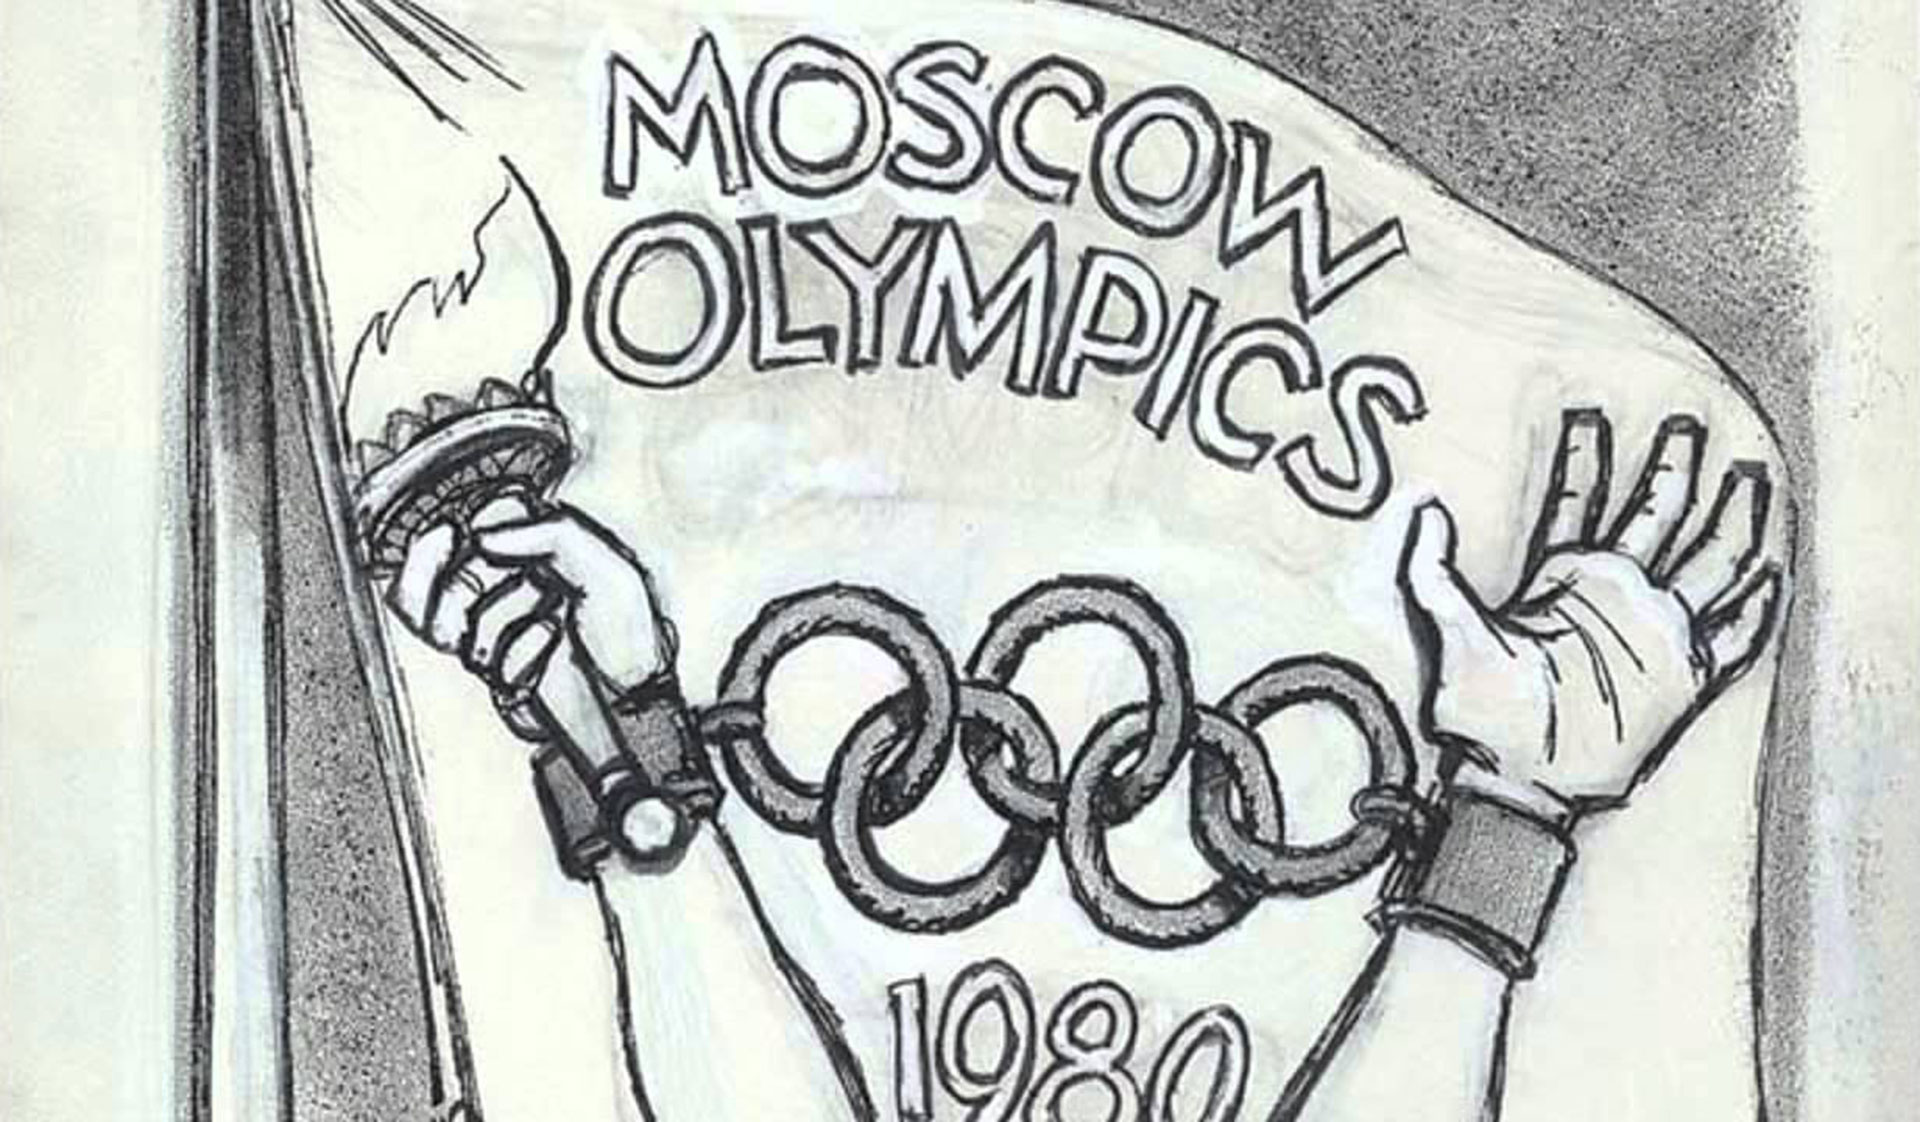 Бойкот игры. Бойкот 1980. Бойкот олимпиады 1980.